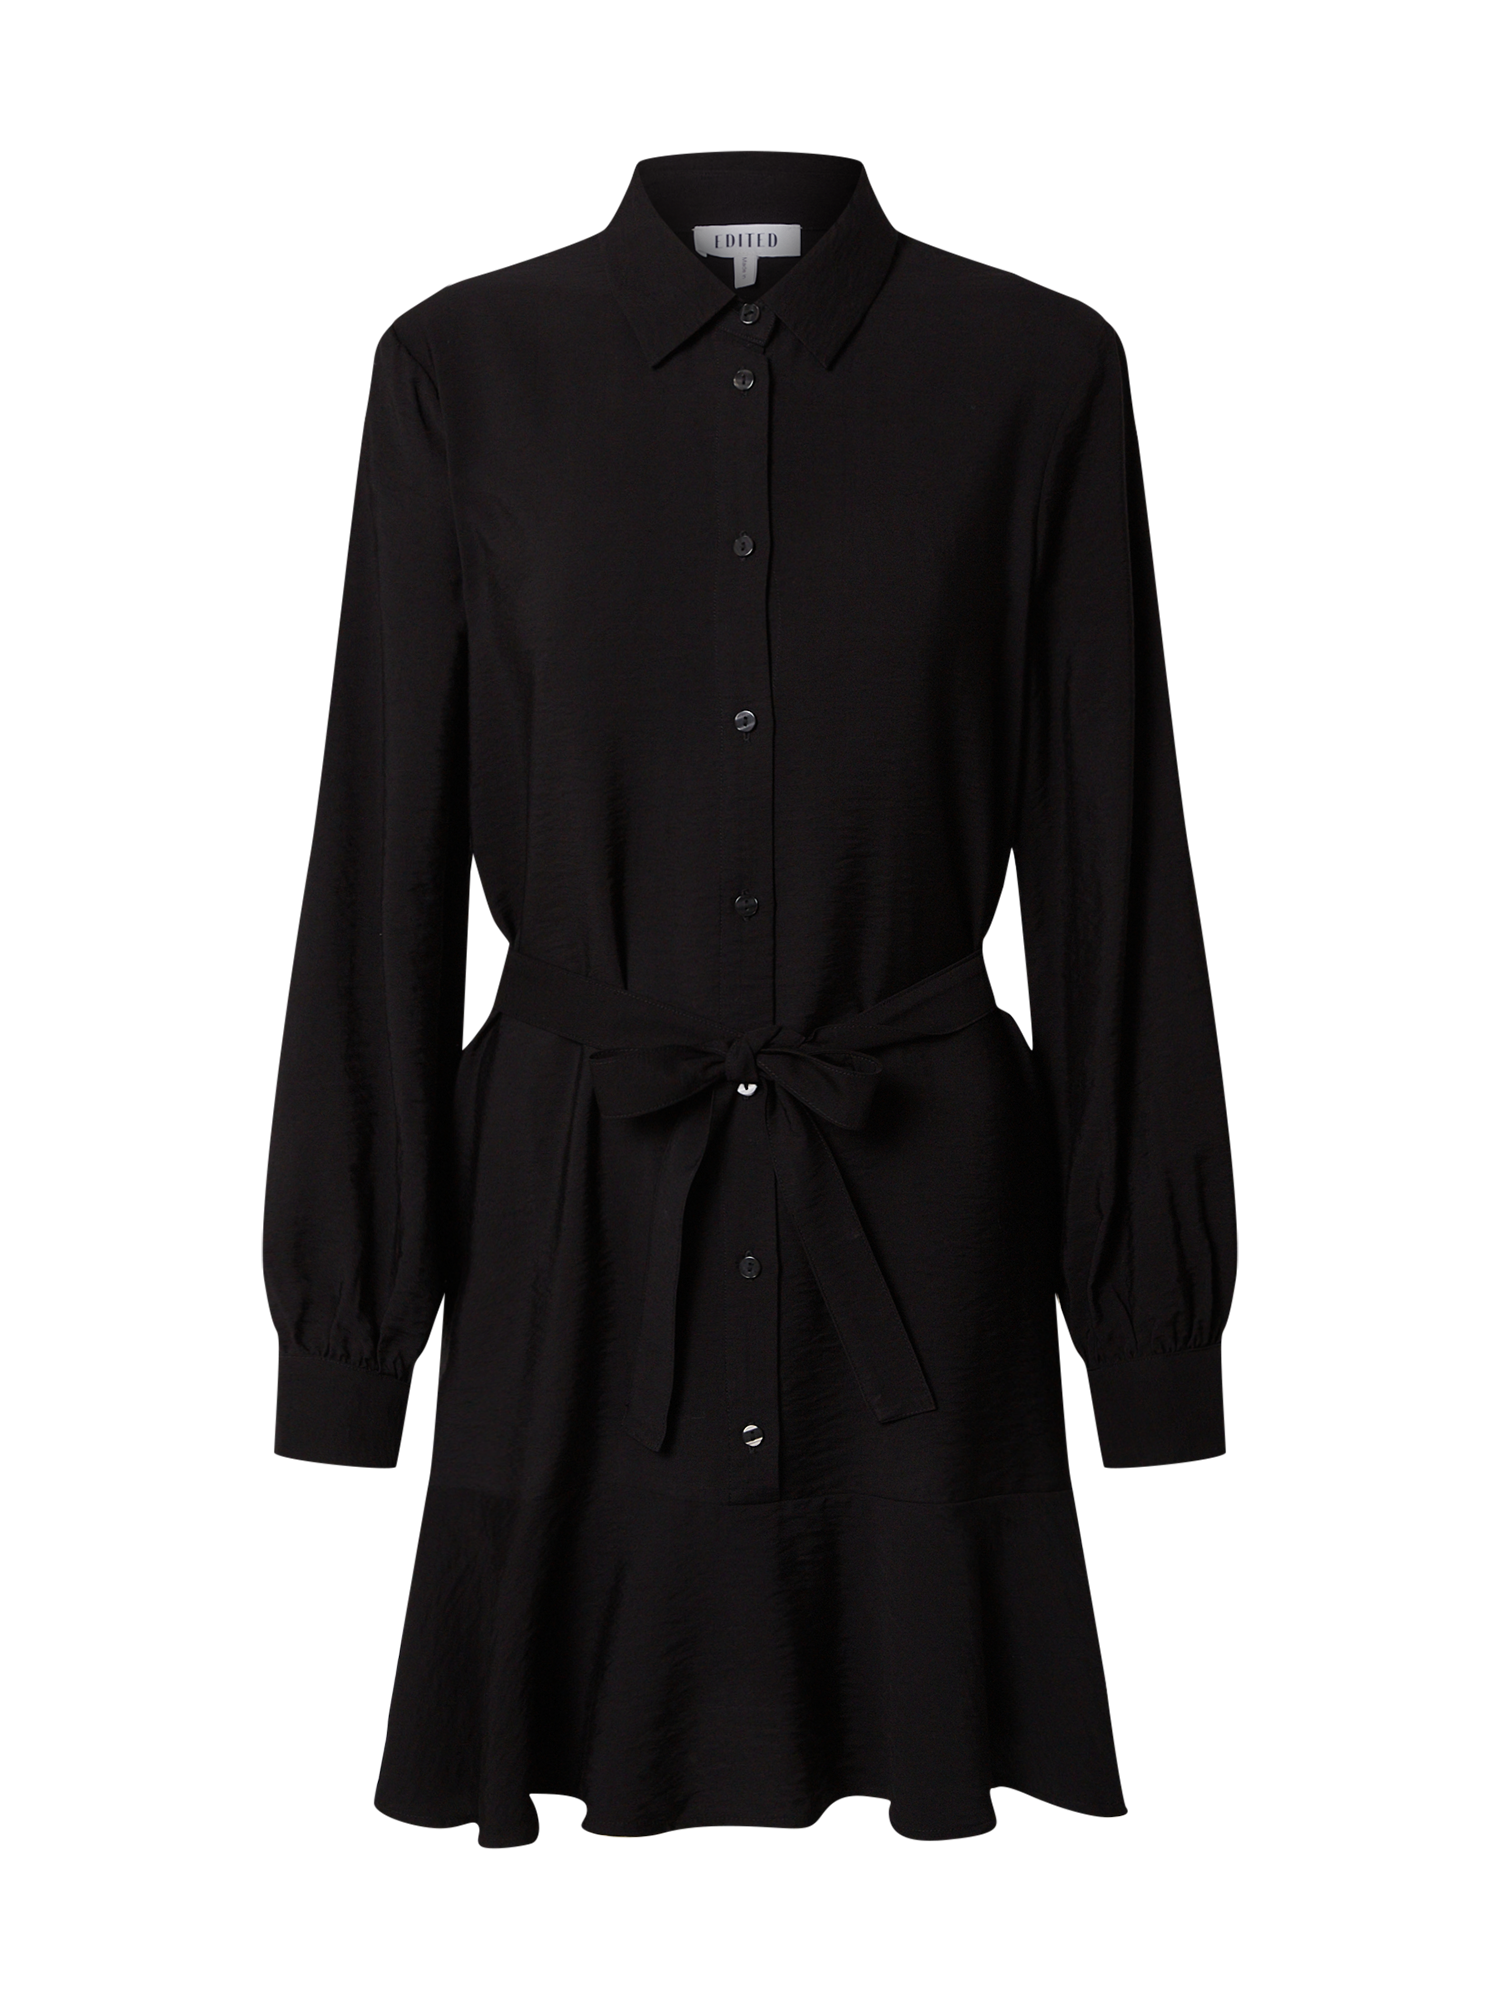 Kobiety Bardziej zrównoważony EDITED Sukienka koszulowa Hanka w kolorze Czarnym 